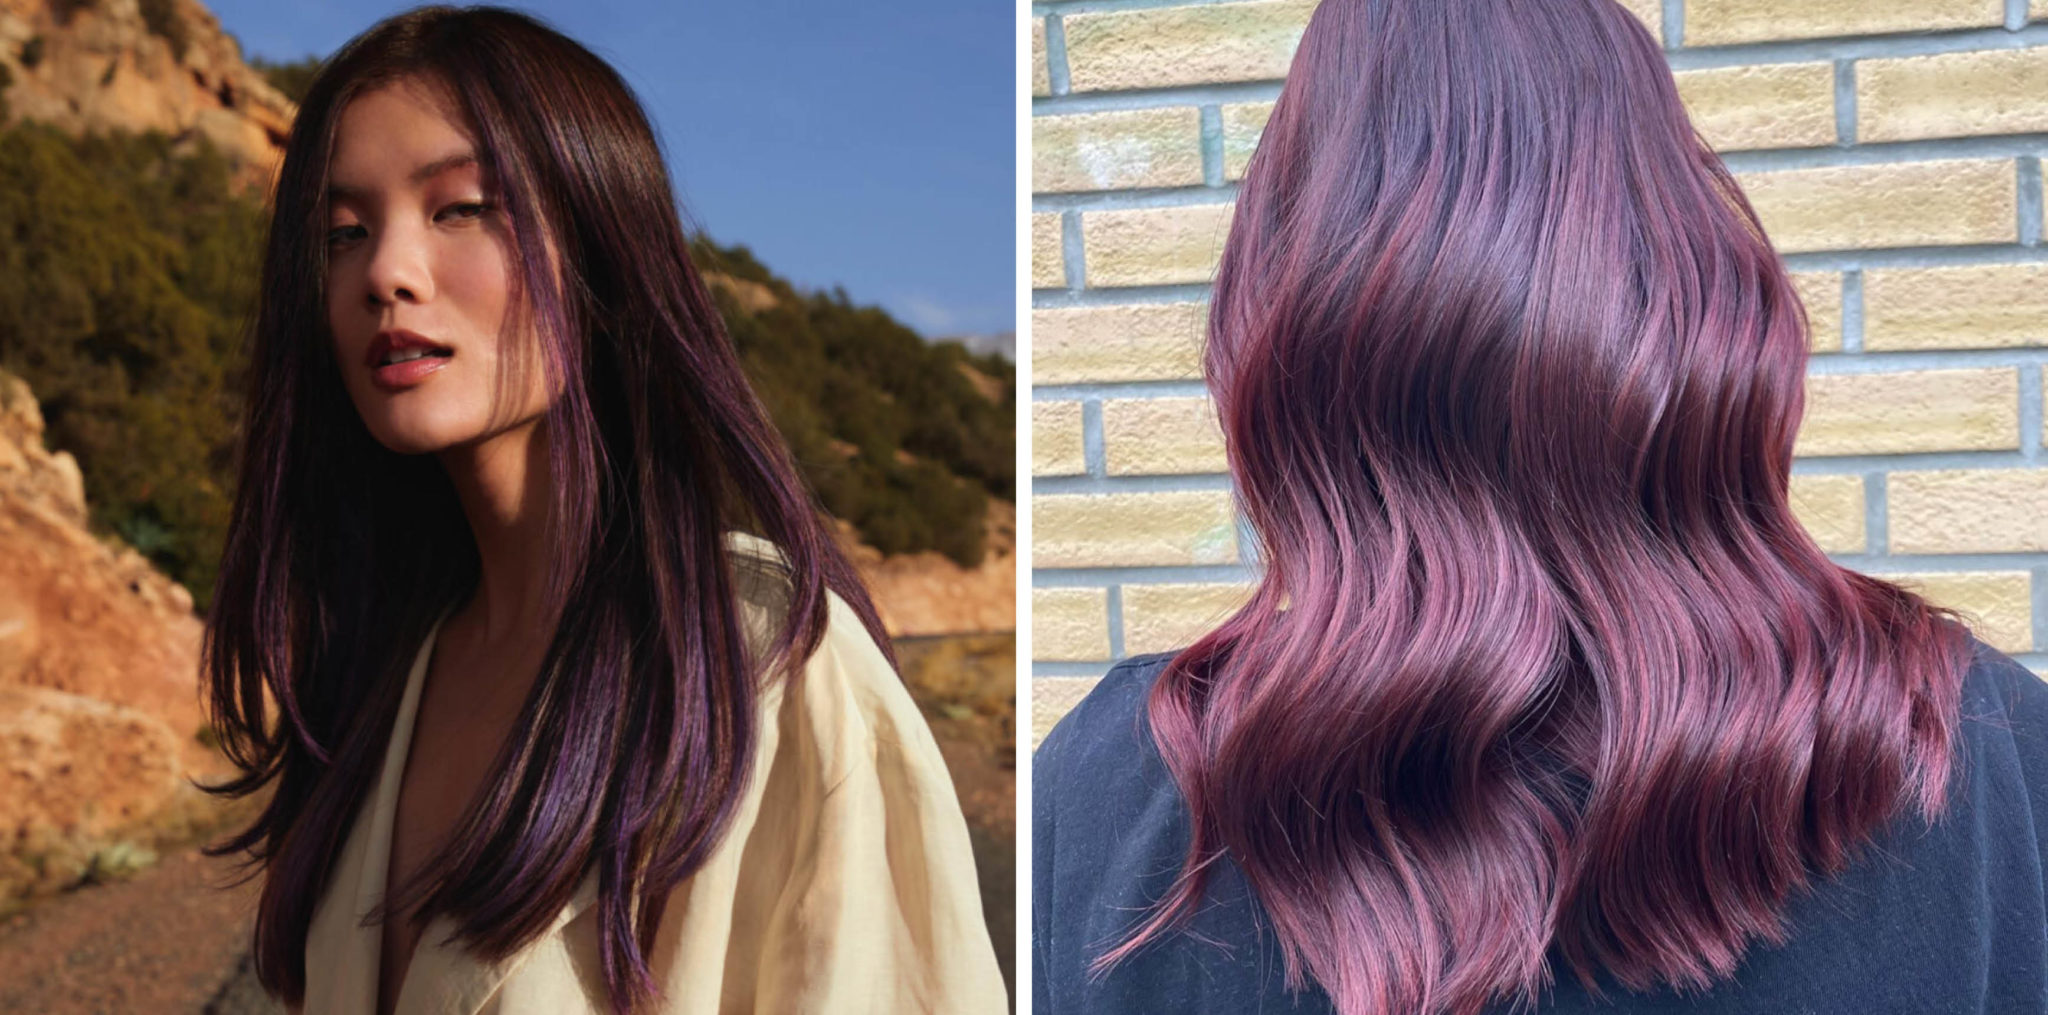 Vill du prova på något extra läckert kan du prova att slinga håret med en plommonfärg – vilket garanterat kommer få färgen att ”poppa”!